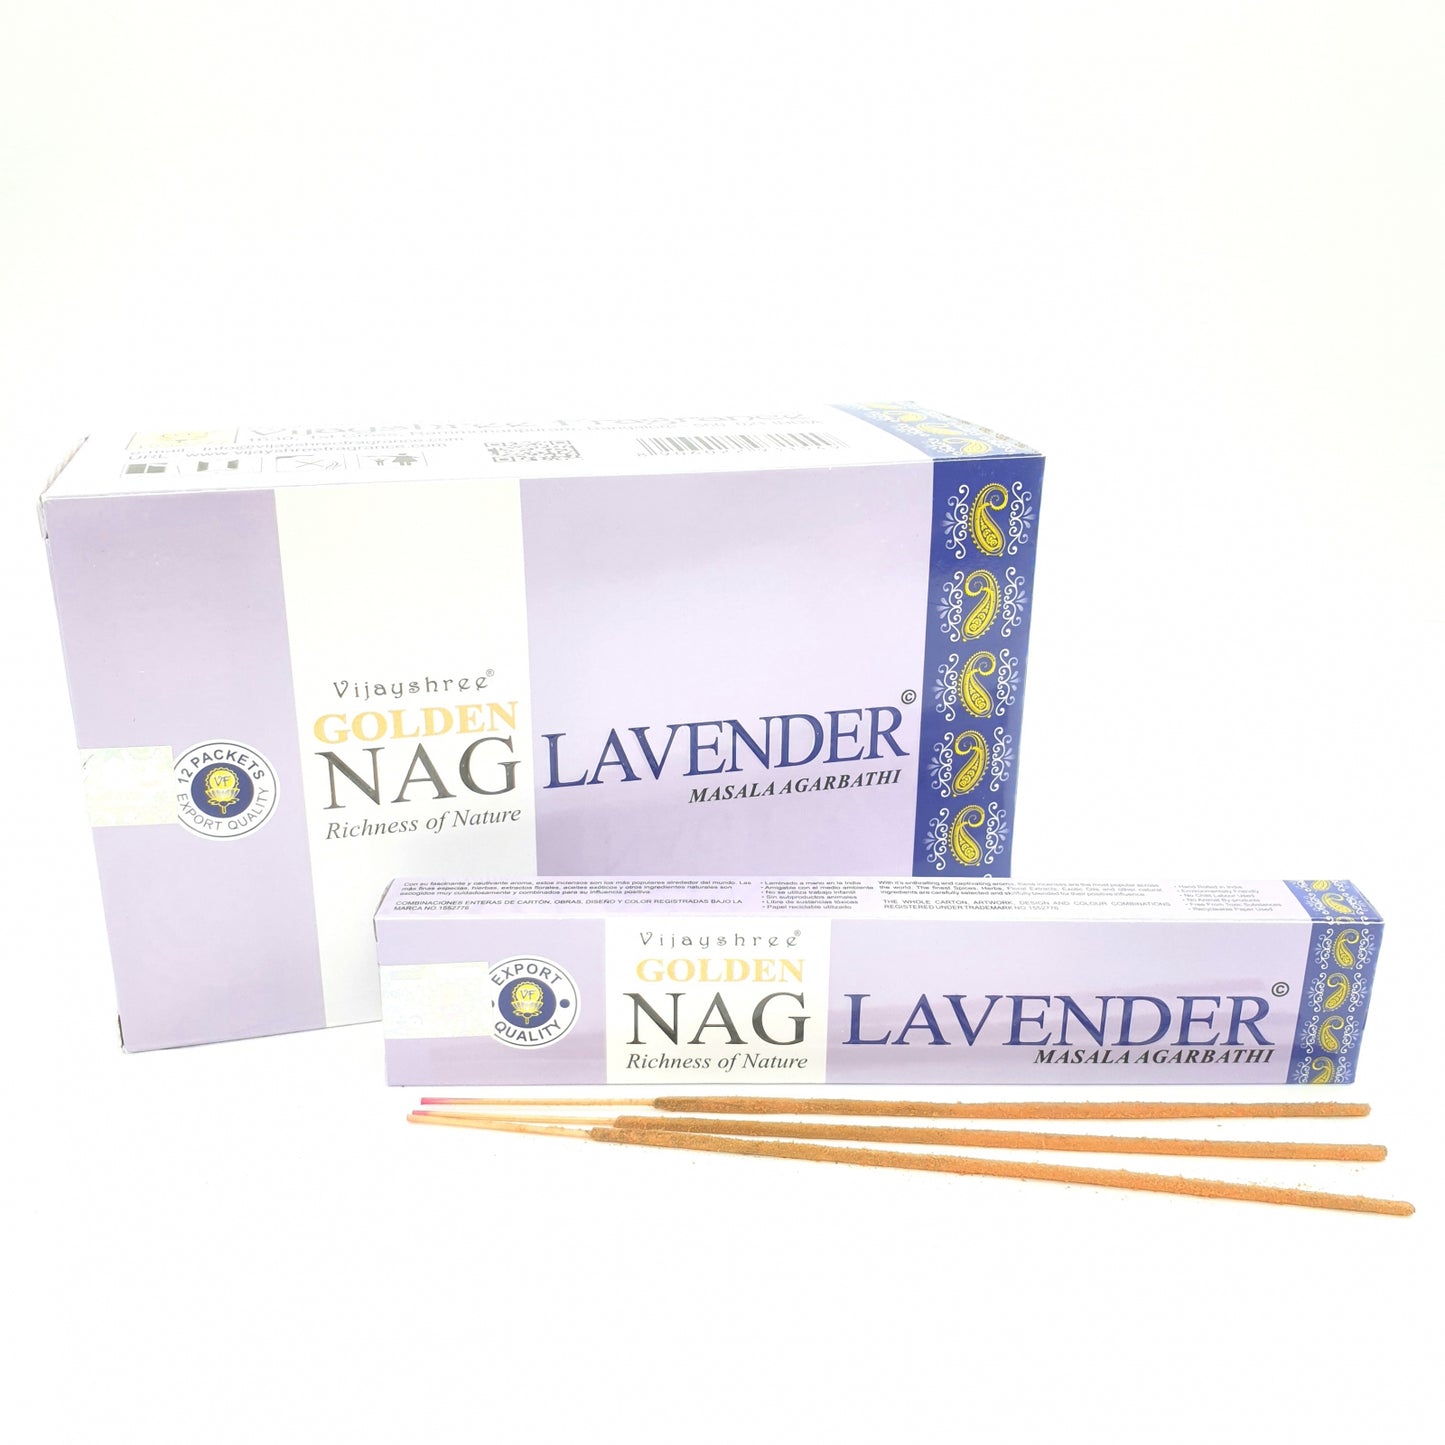 Golden Nag Lavender - Entspannung und Wohlbefinden